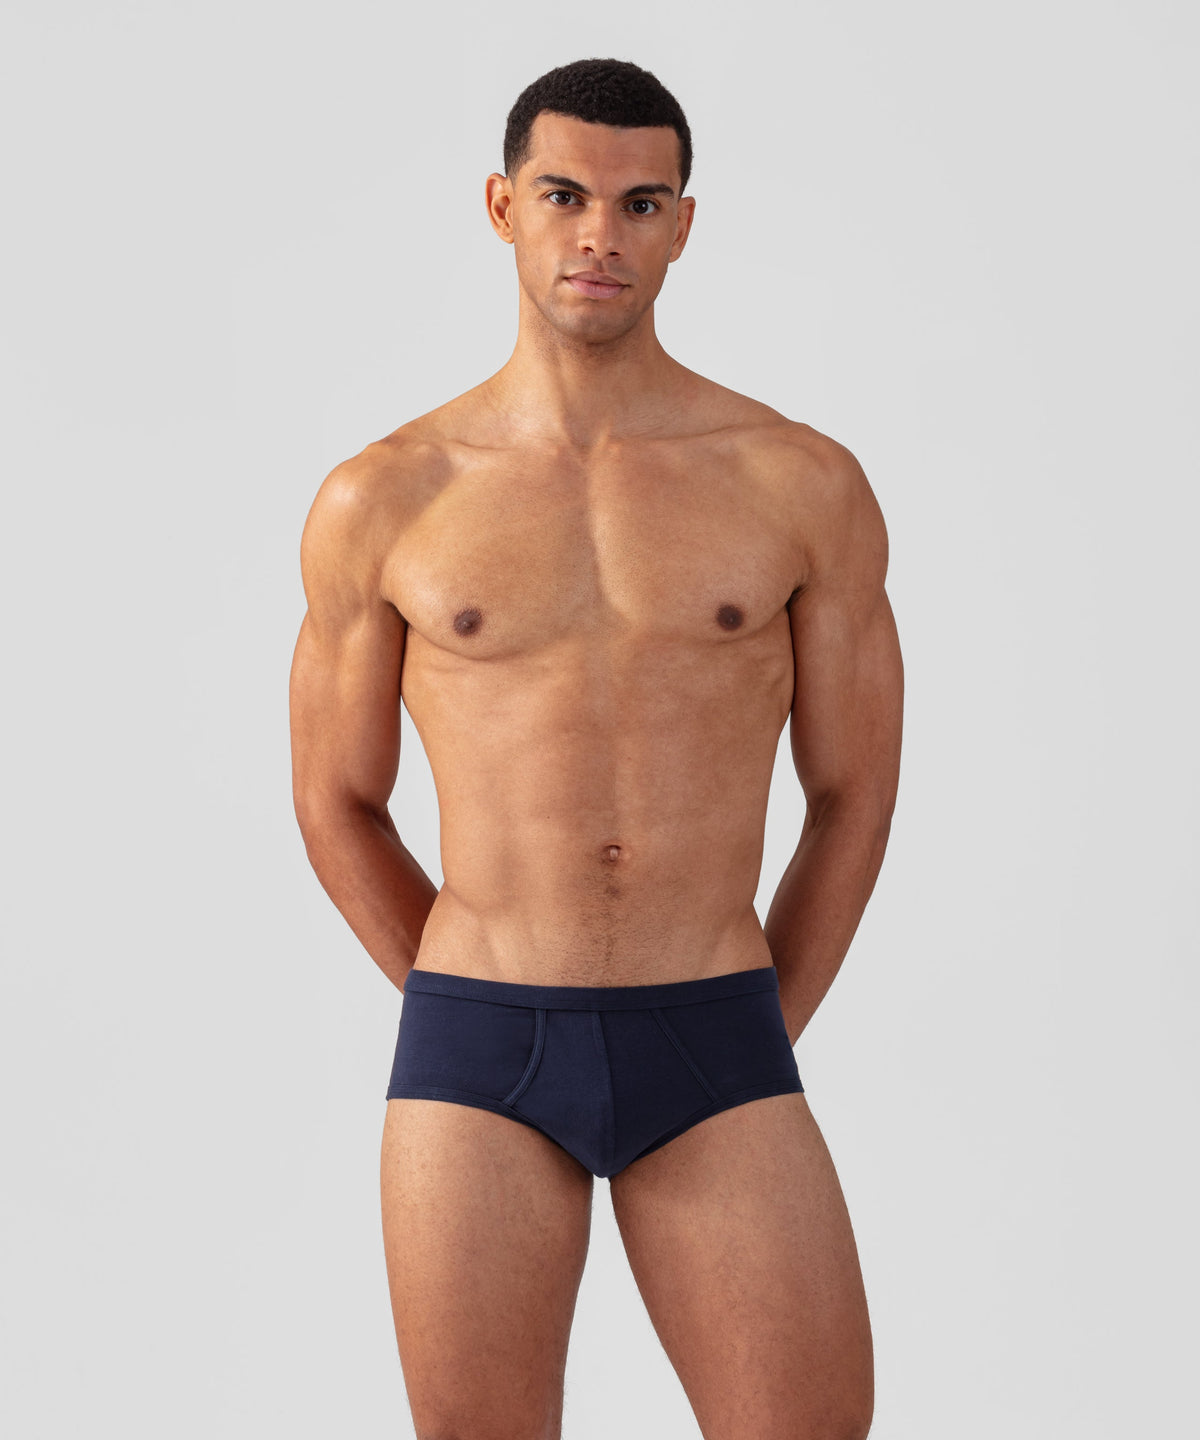 Body Magazine // Wholesale Men's Underwear News // New Designs From Wood  Men's Underwear